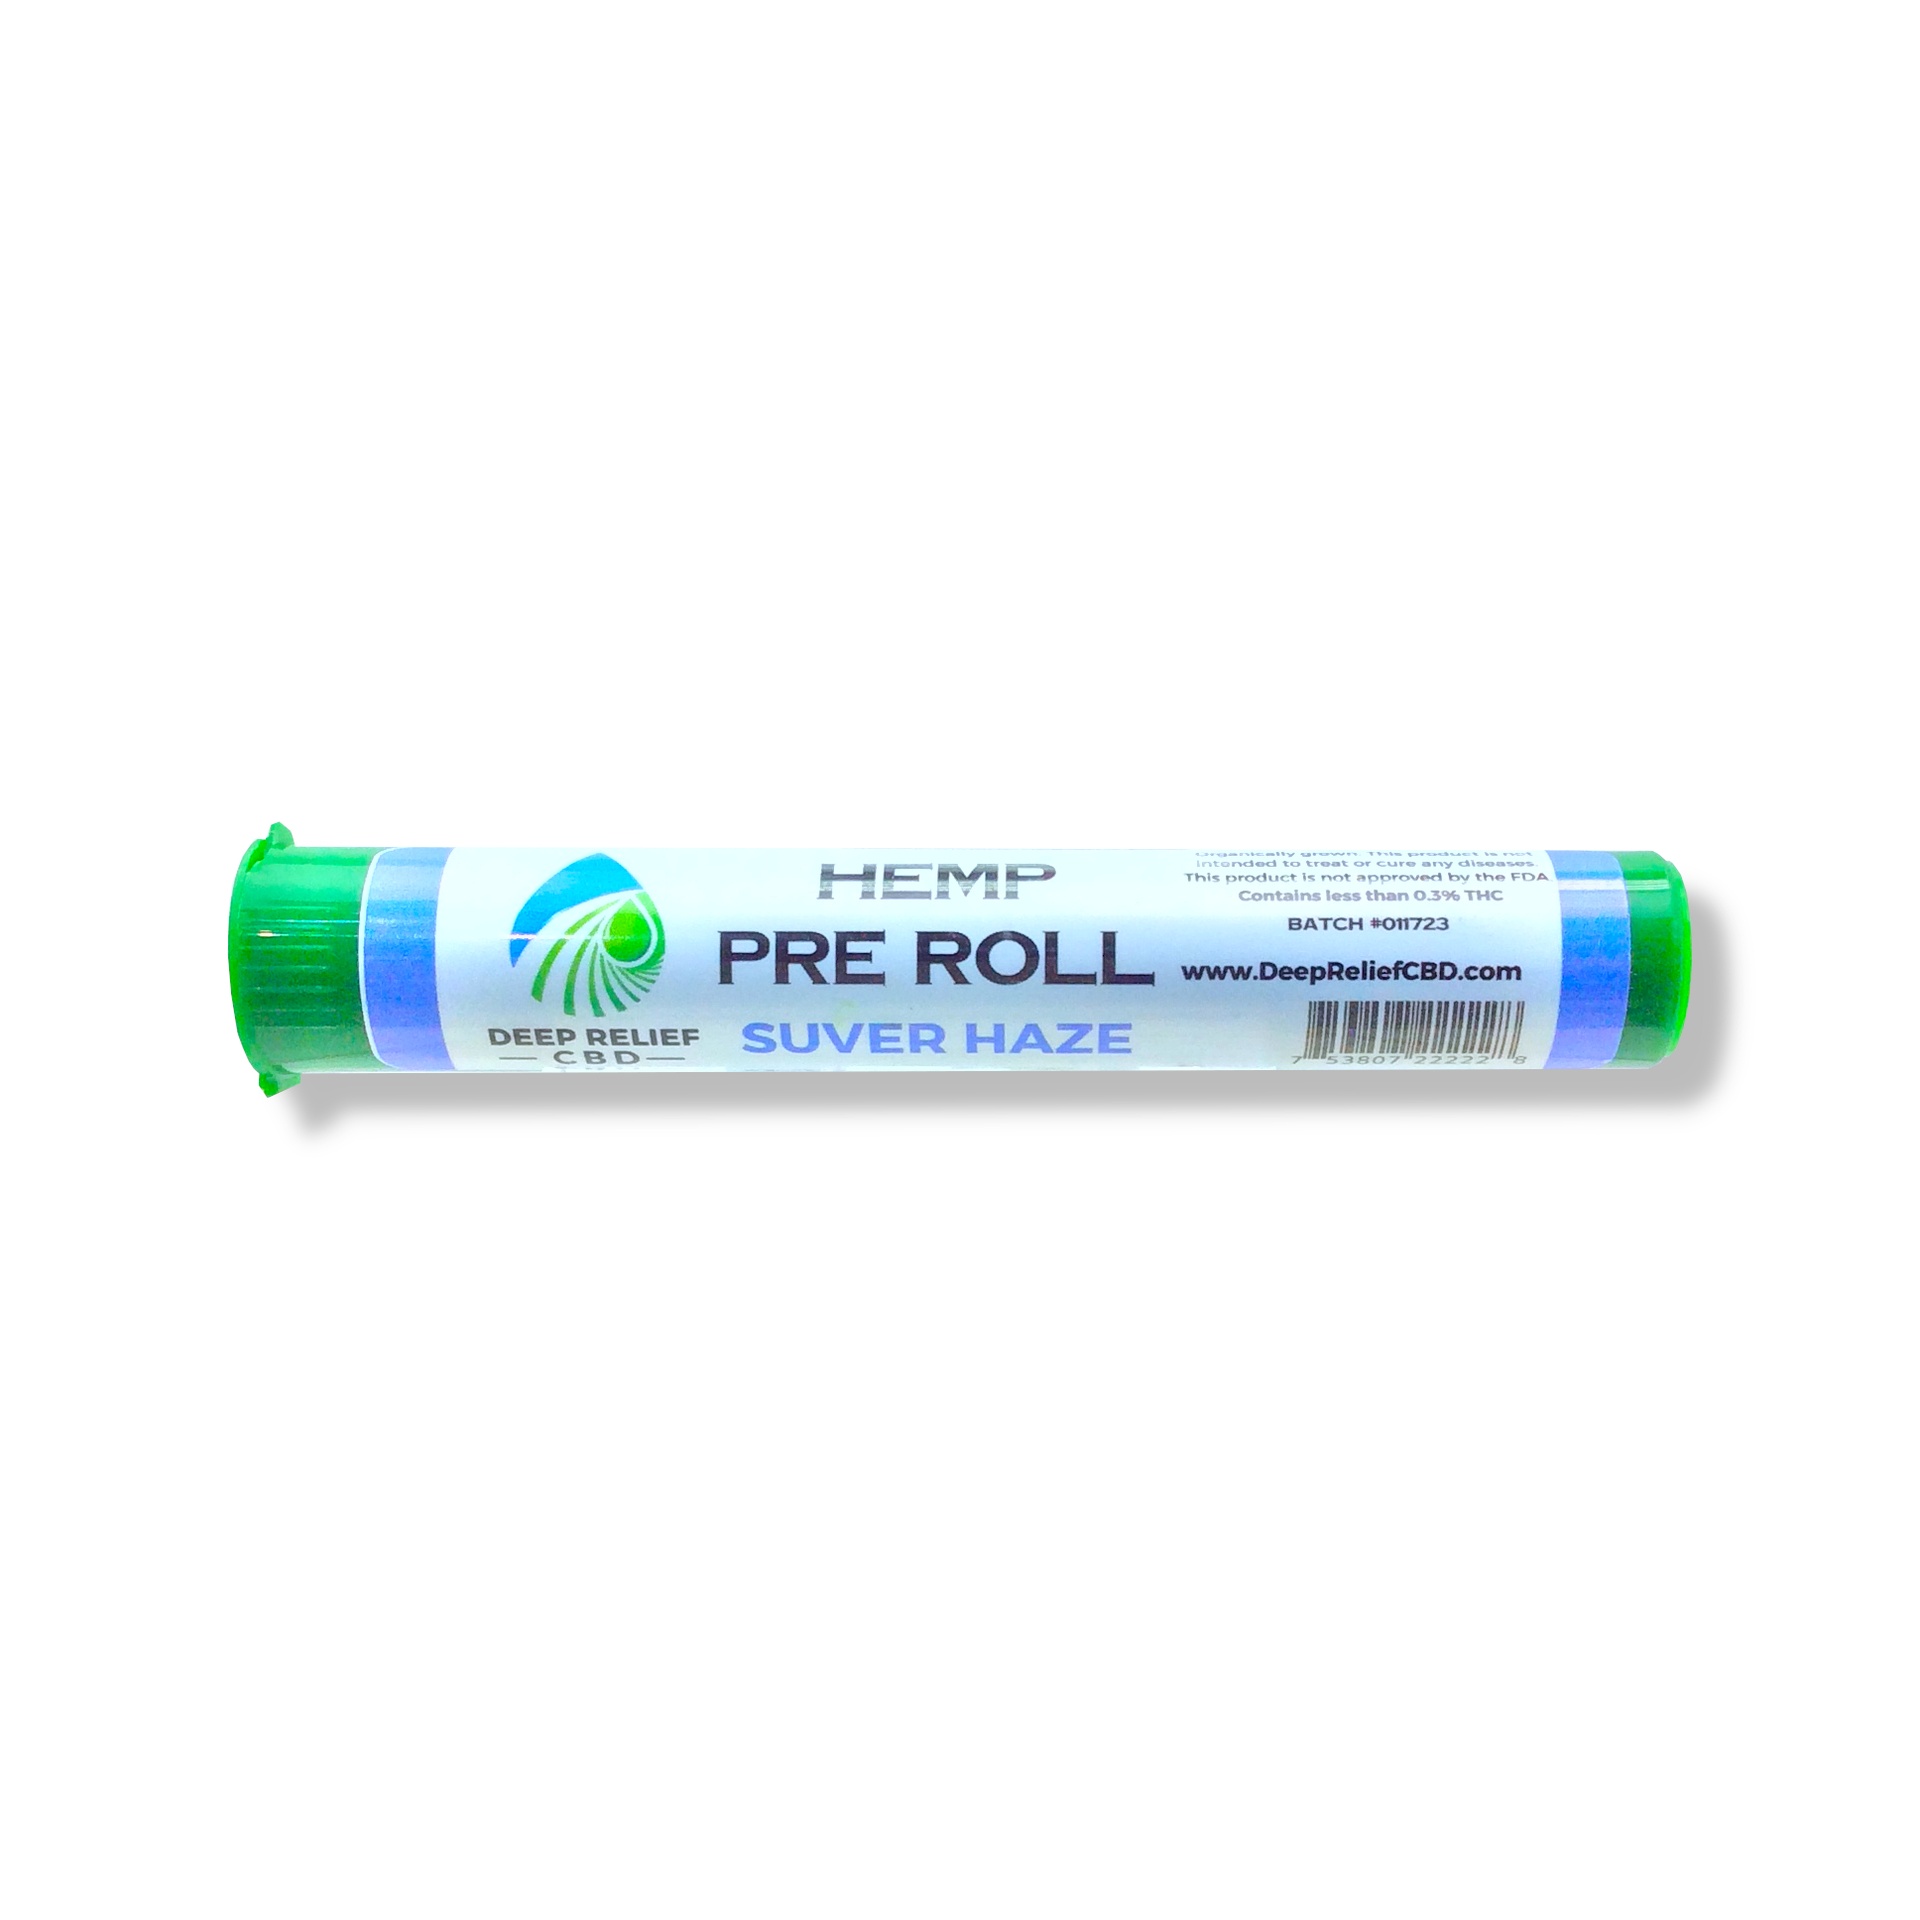 Deep Relief CBD Pre Roll 1gm (Suver Haze)